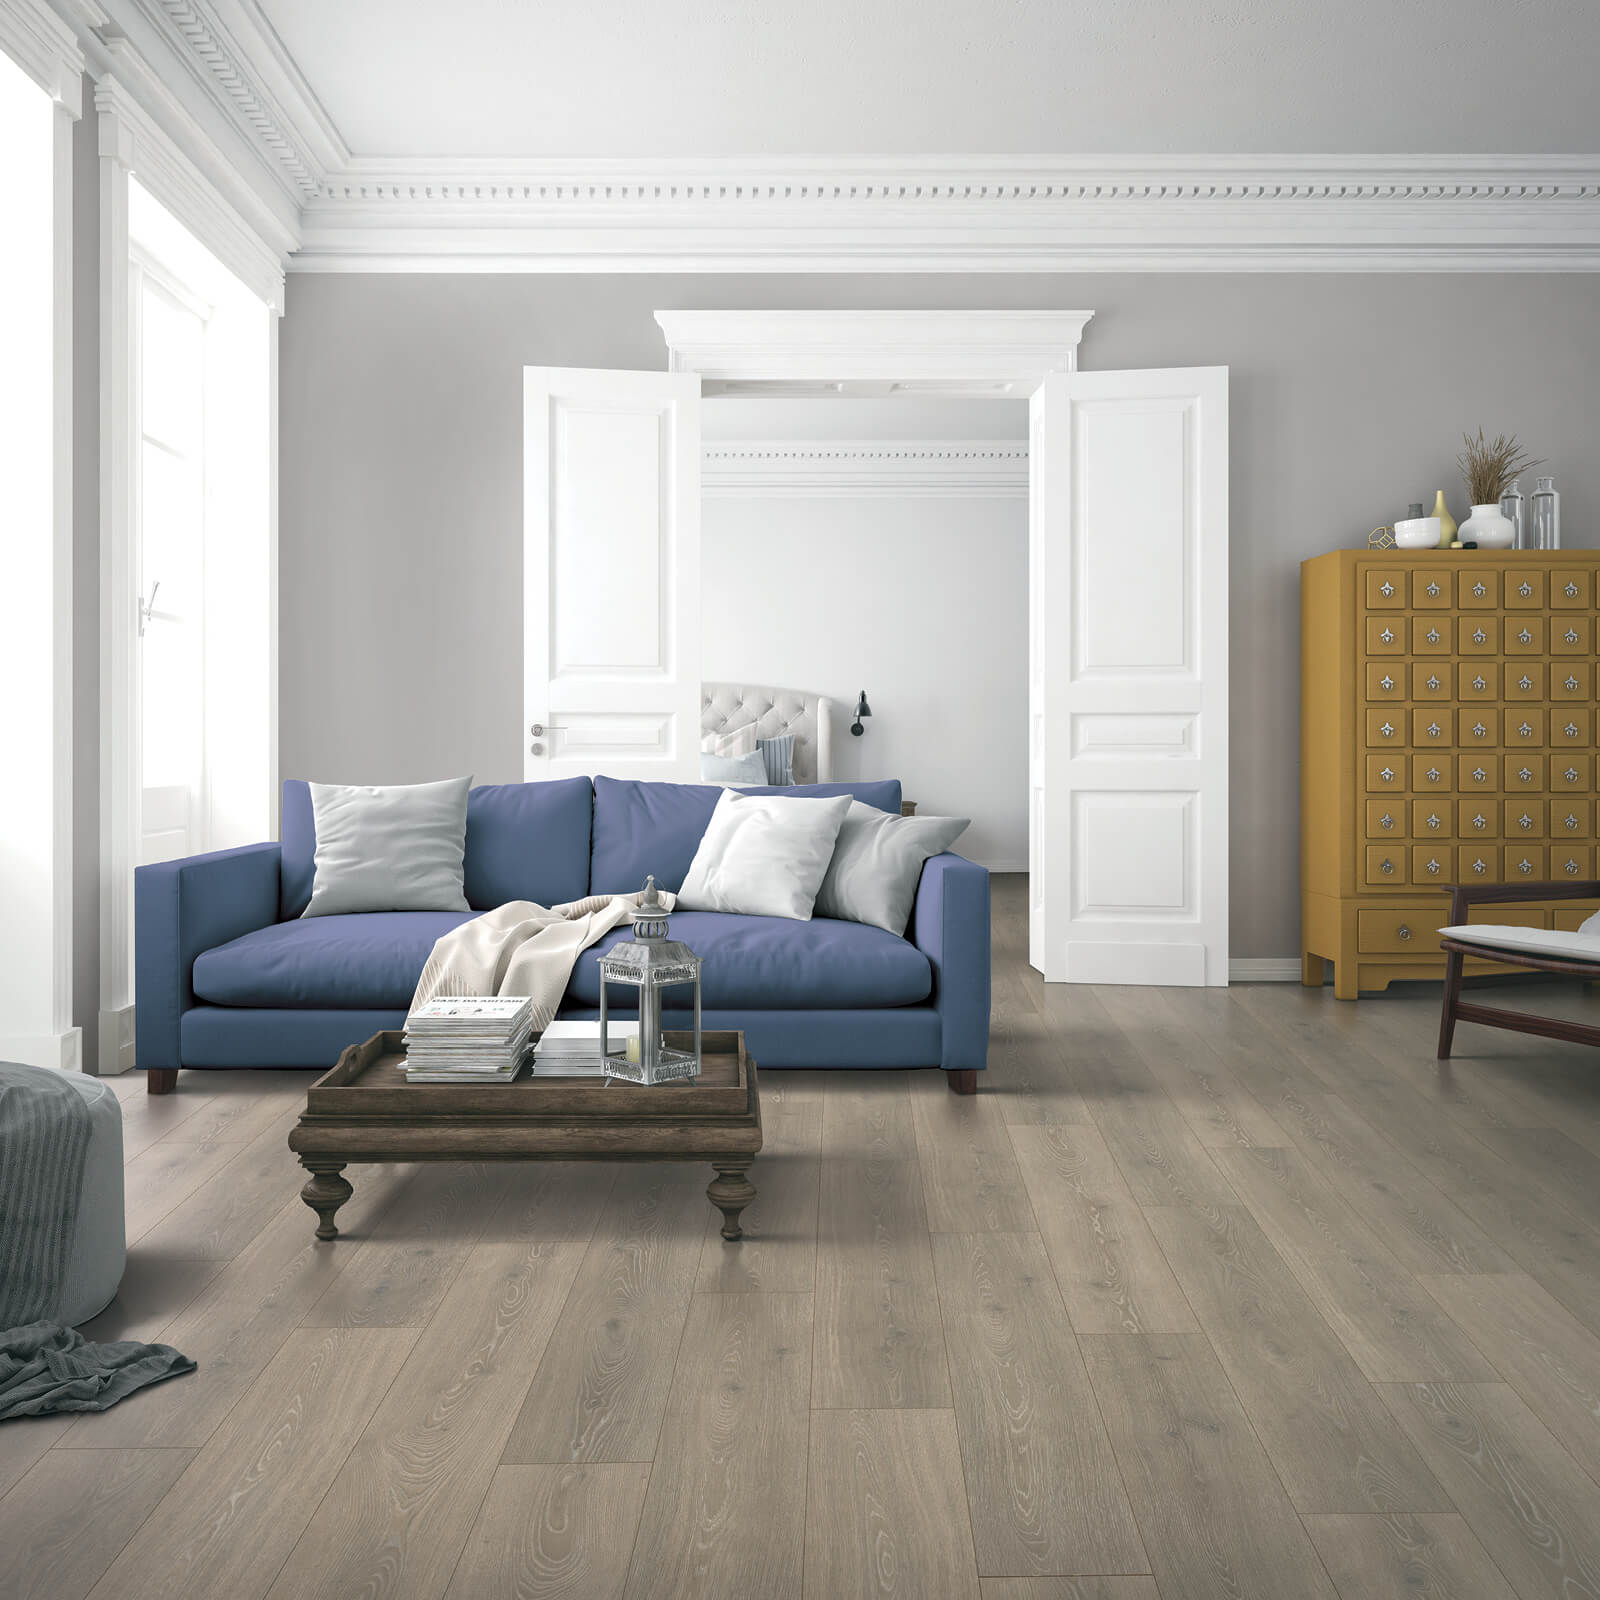 Wood-look flooring in living room | Floorco Premium